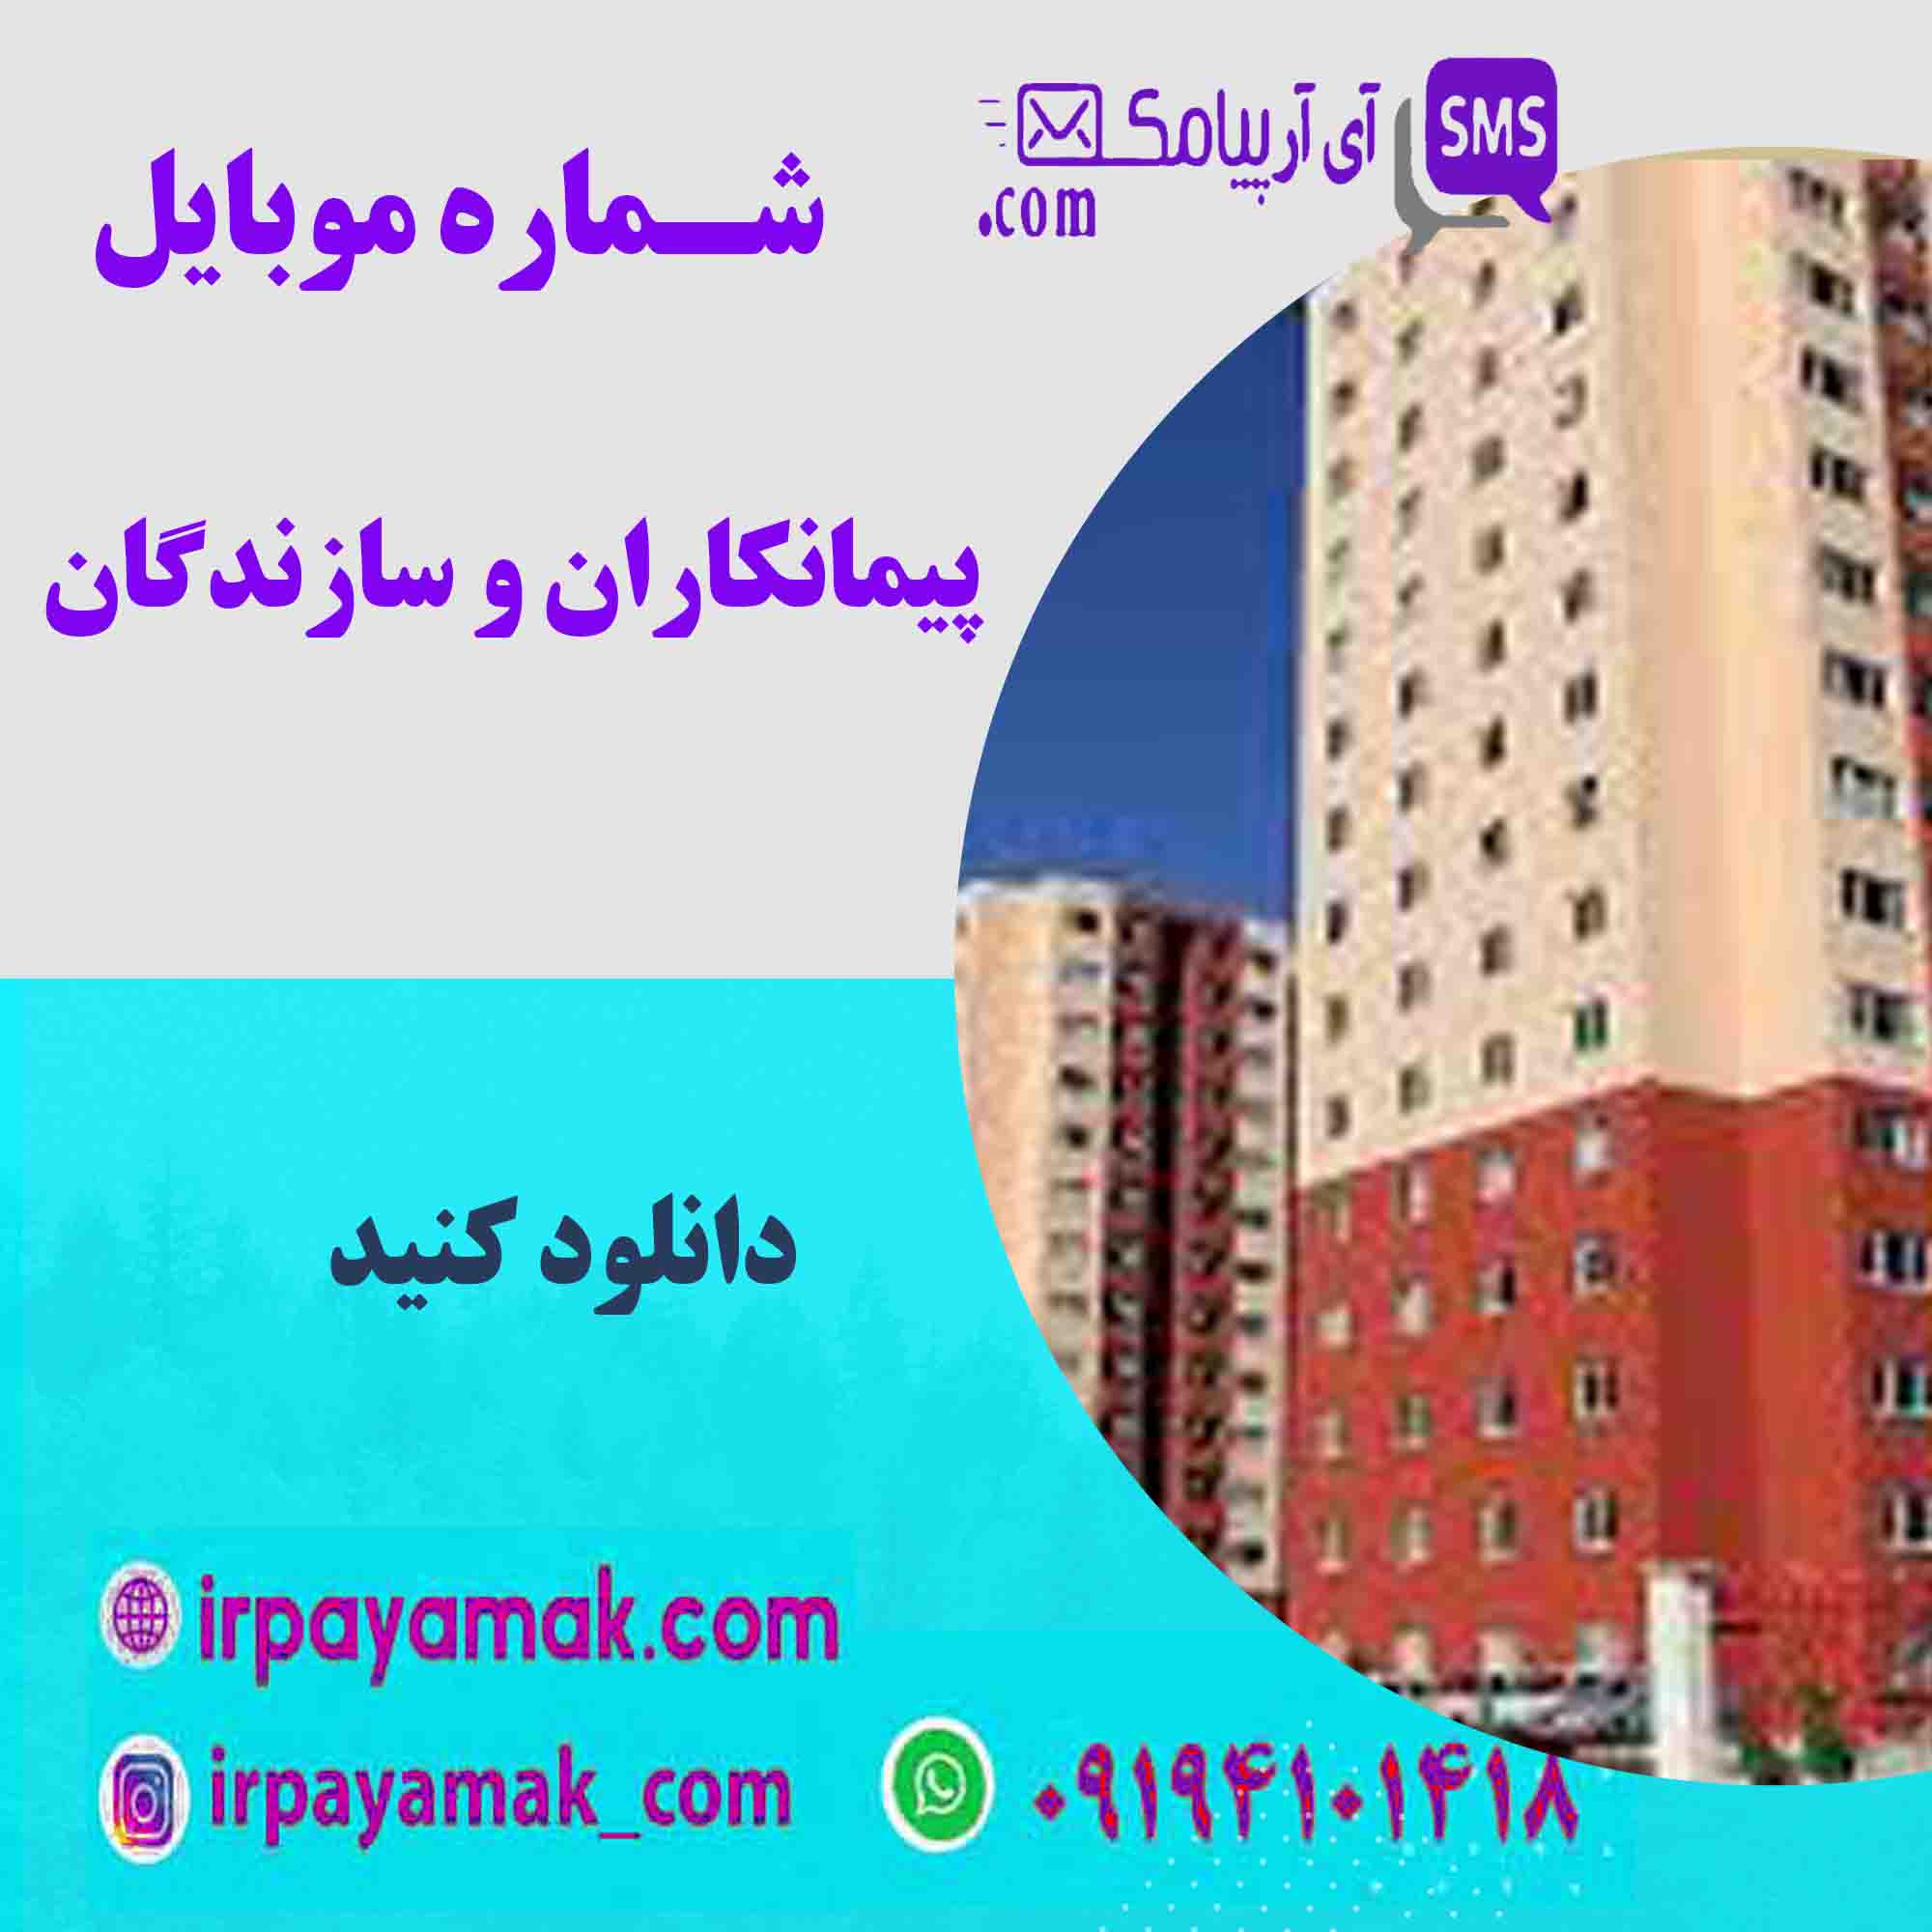 شماره موبایل سازندگان - منطقه 5 تهران